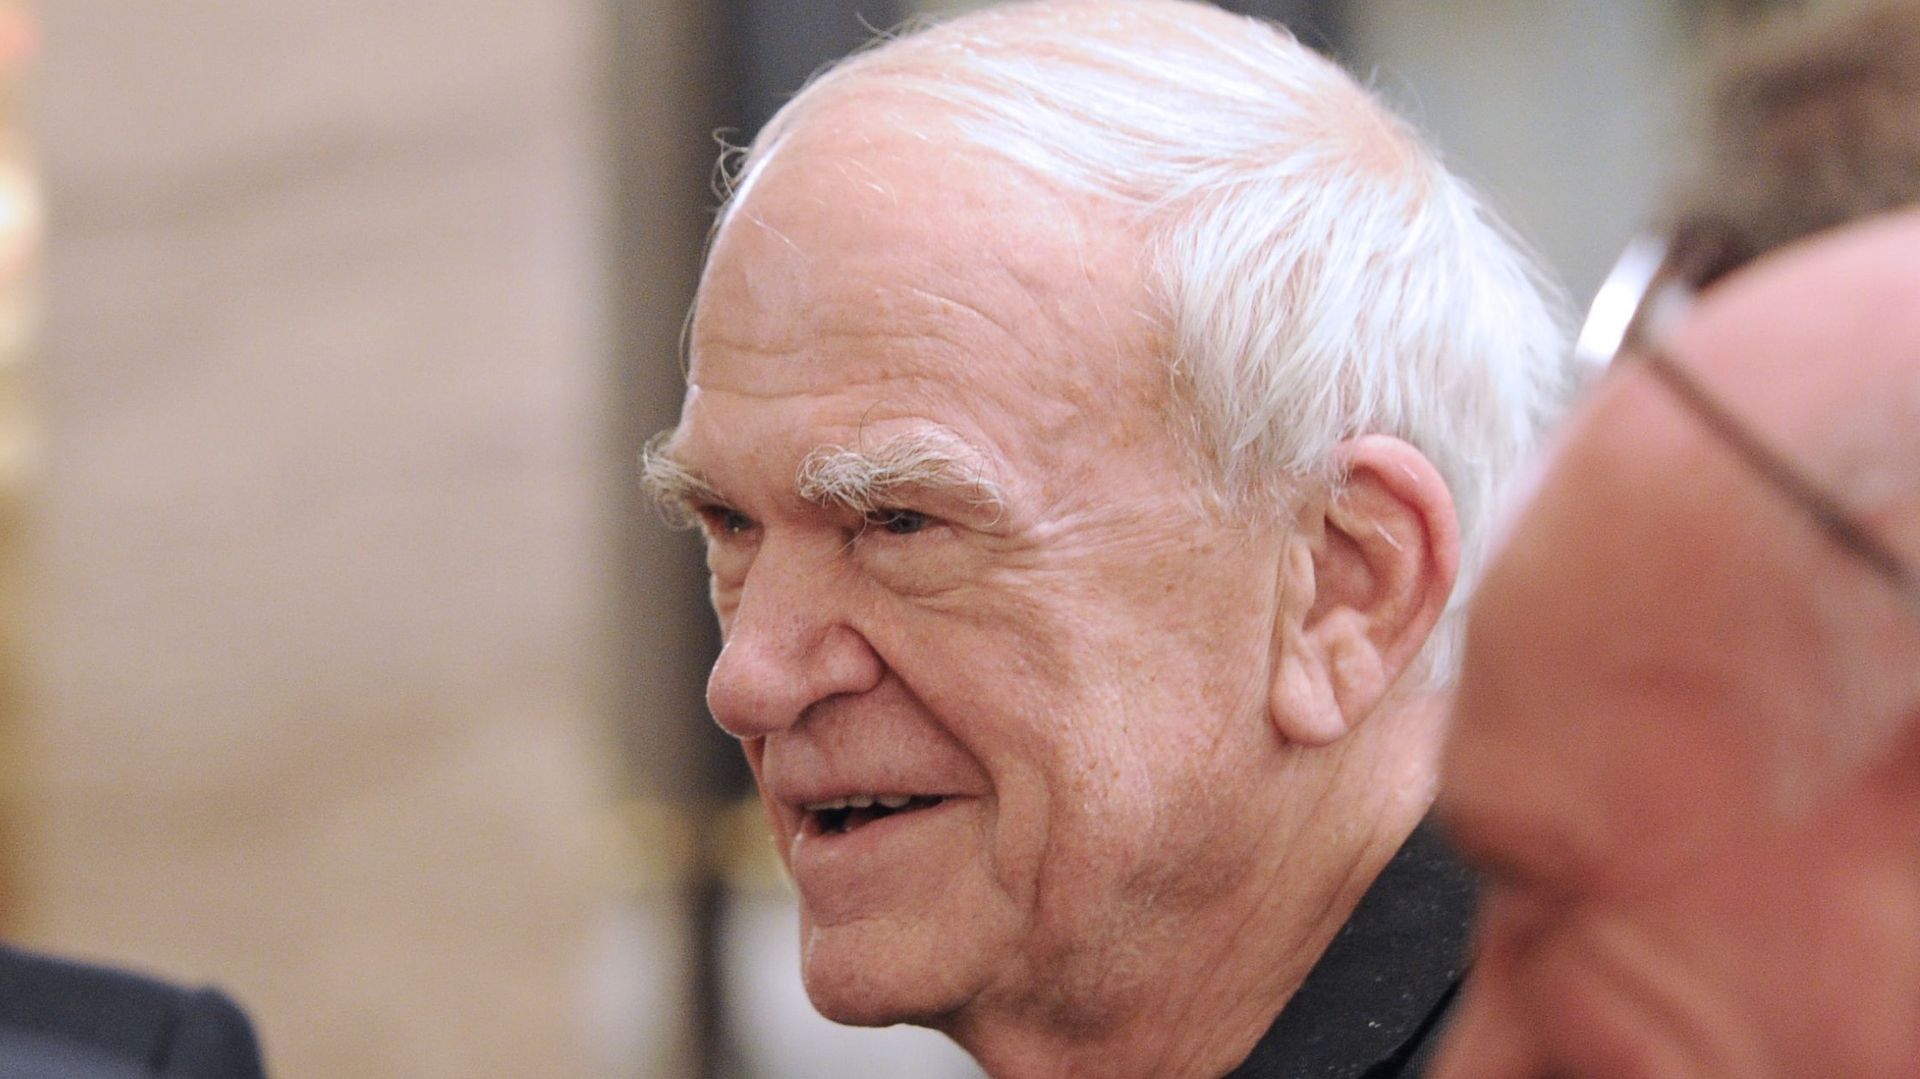 Le romancier Milan Kundera a reçu la citoyenneté tchèque, 40 ans après avoir été déchu de sa nationalité tchécoslovaque par le régime communiste.